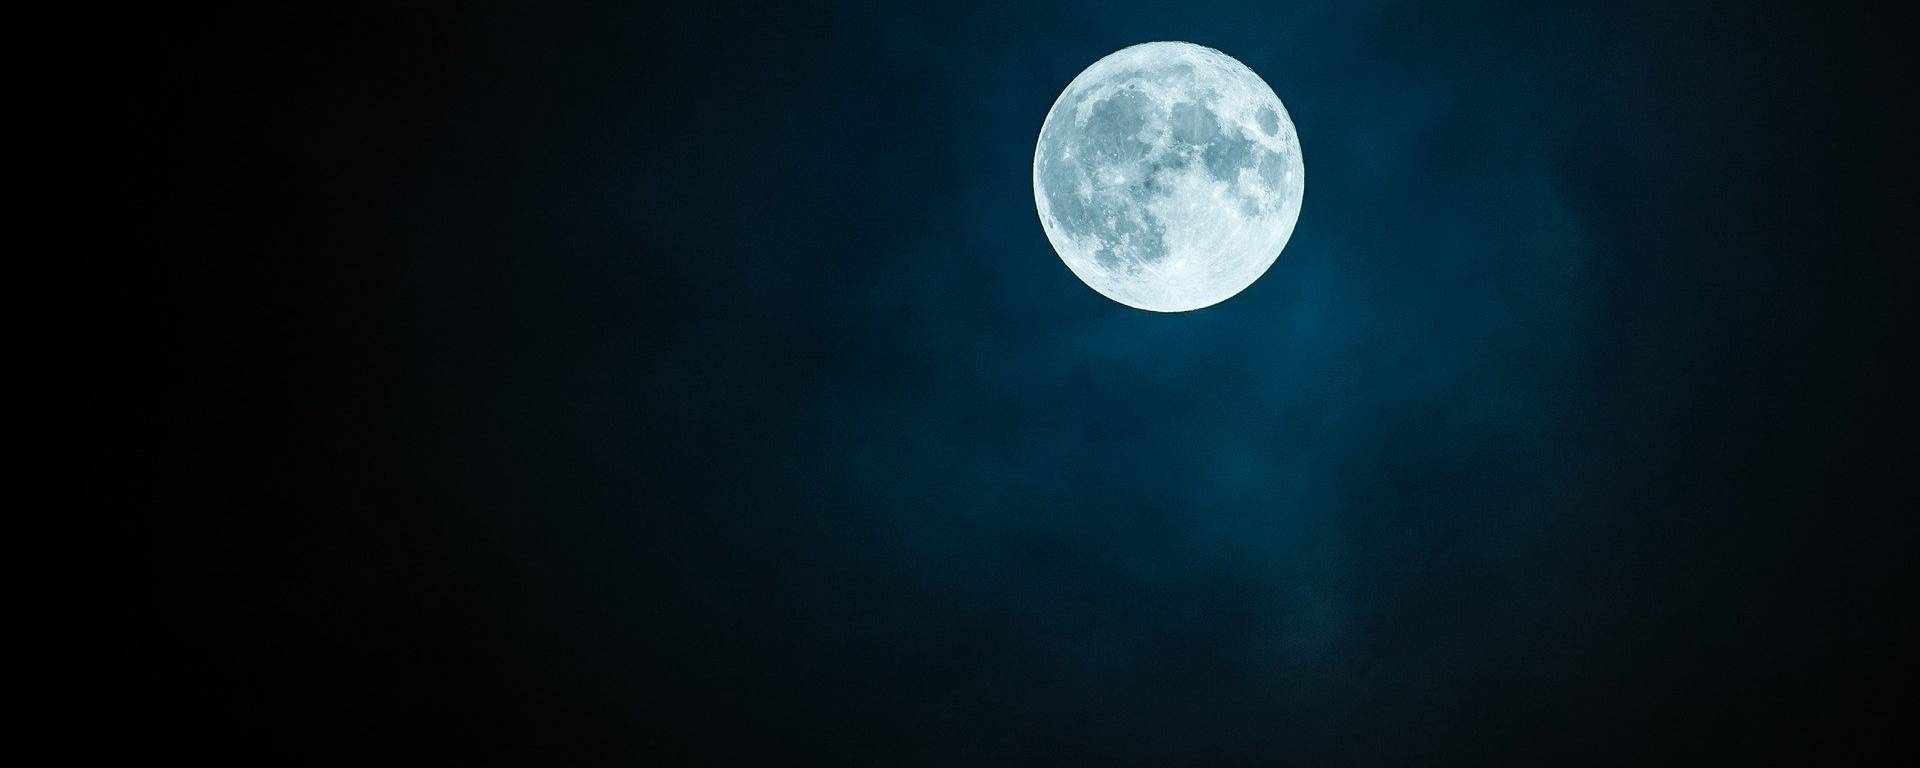 Comment voir l’éclipse de Lune en direct depuis chez soi ?